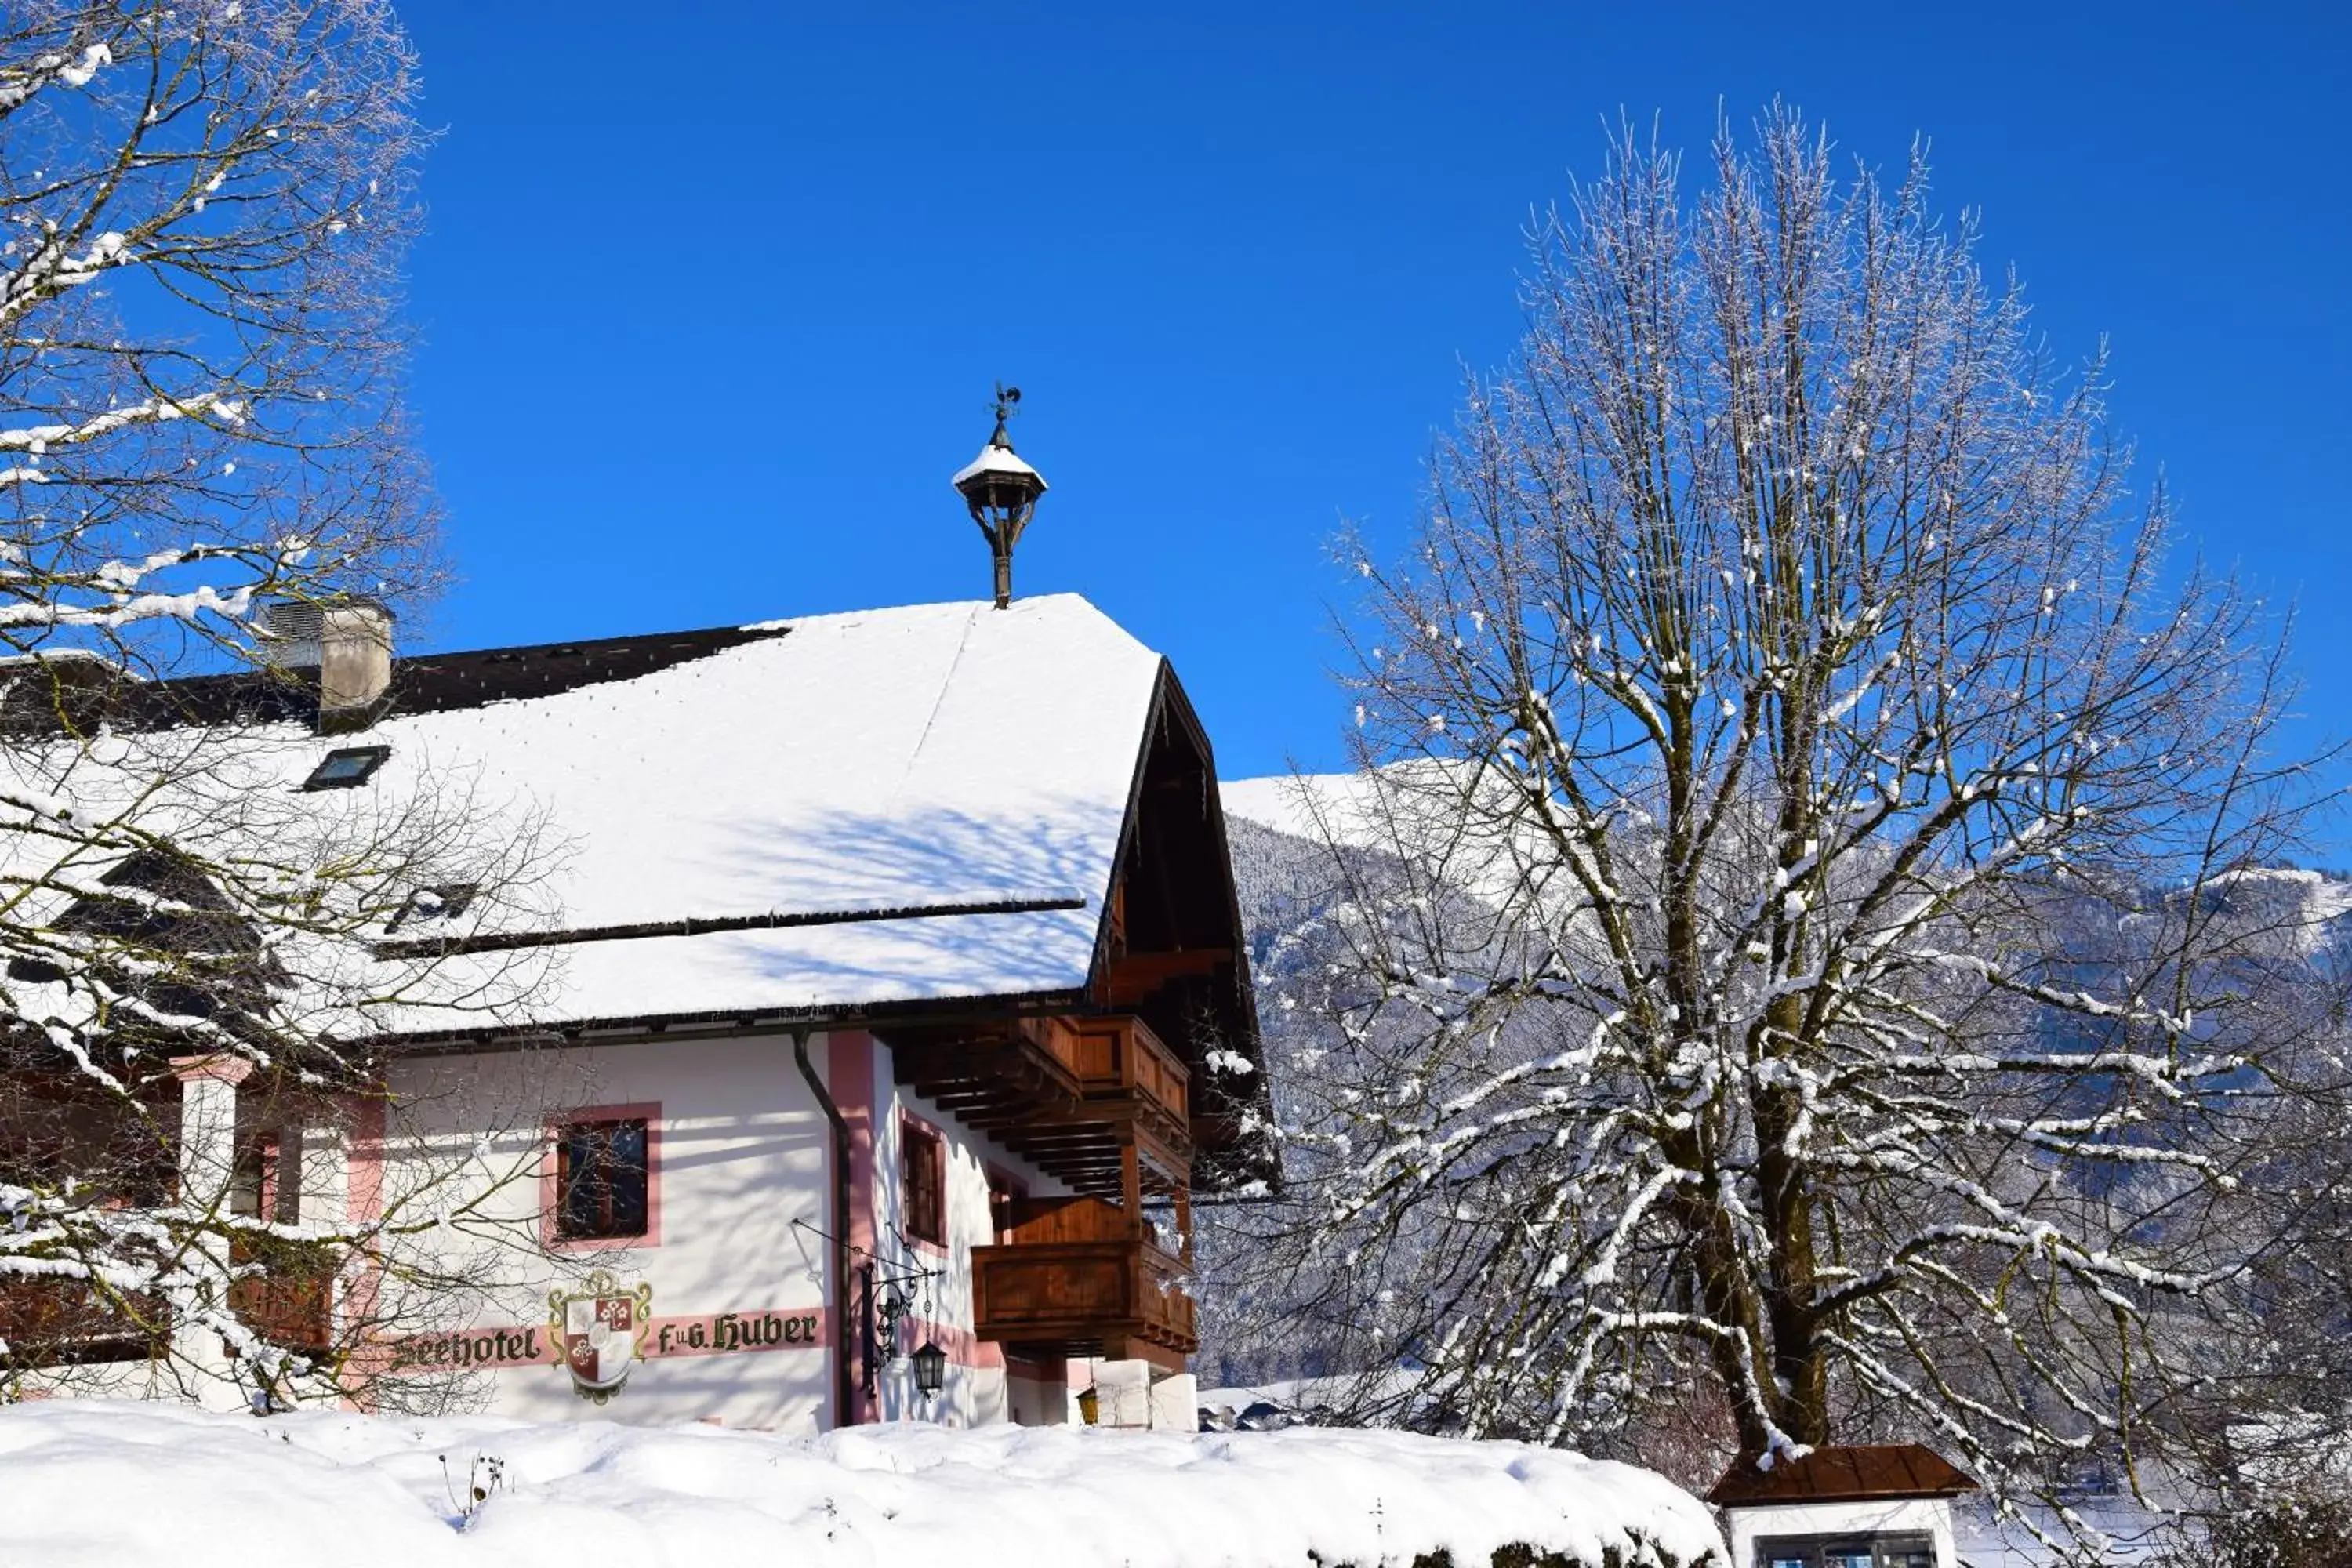 Winter in Seehotel Huber